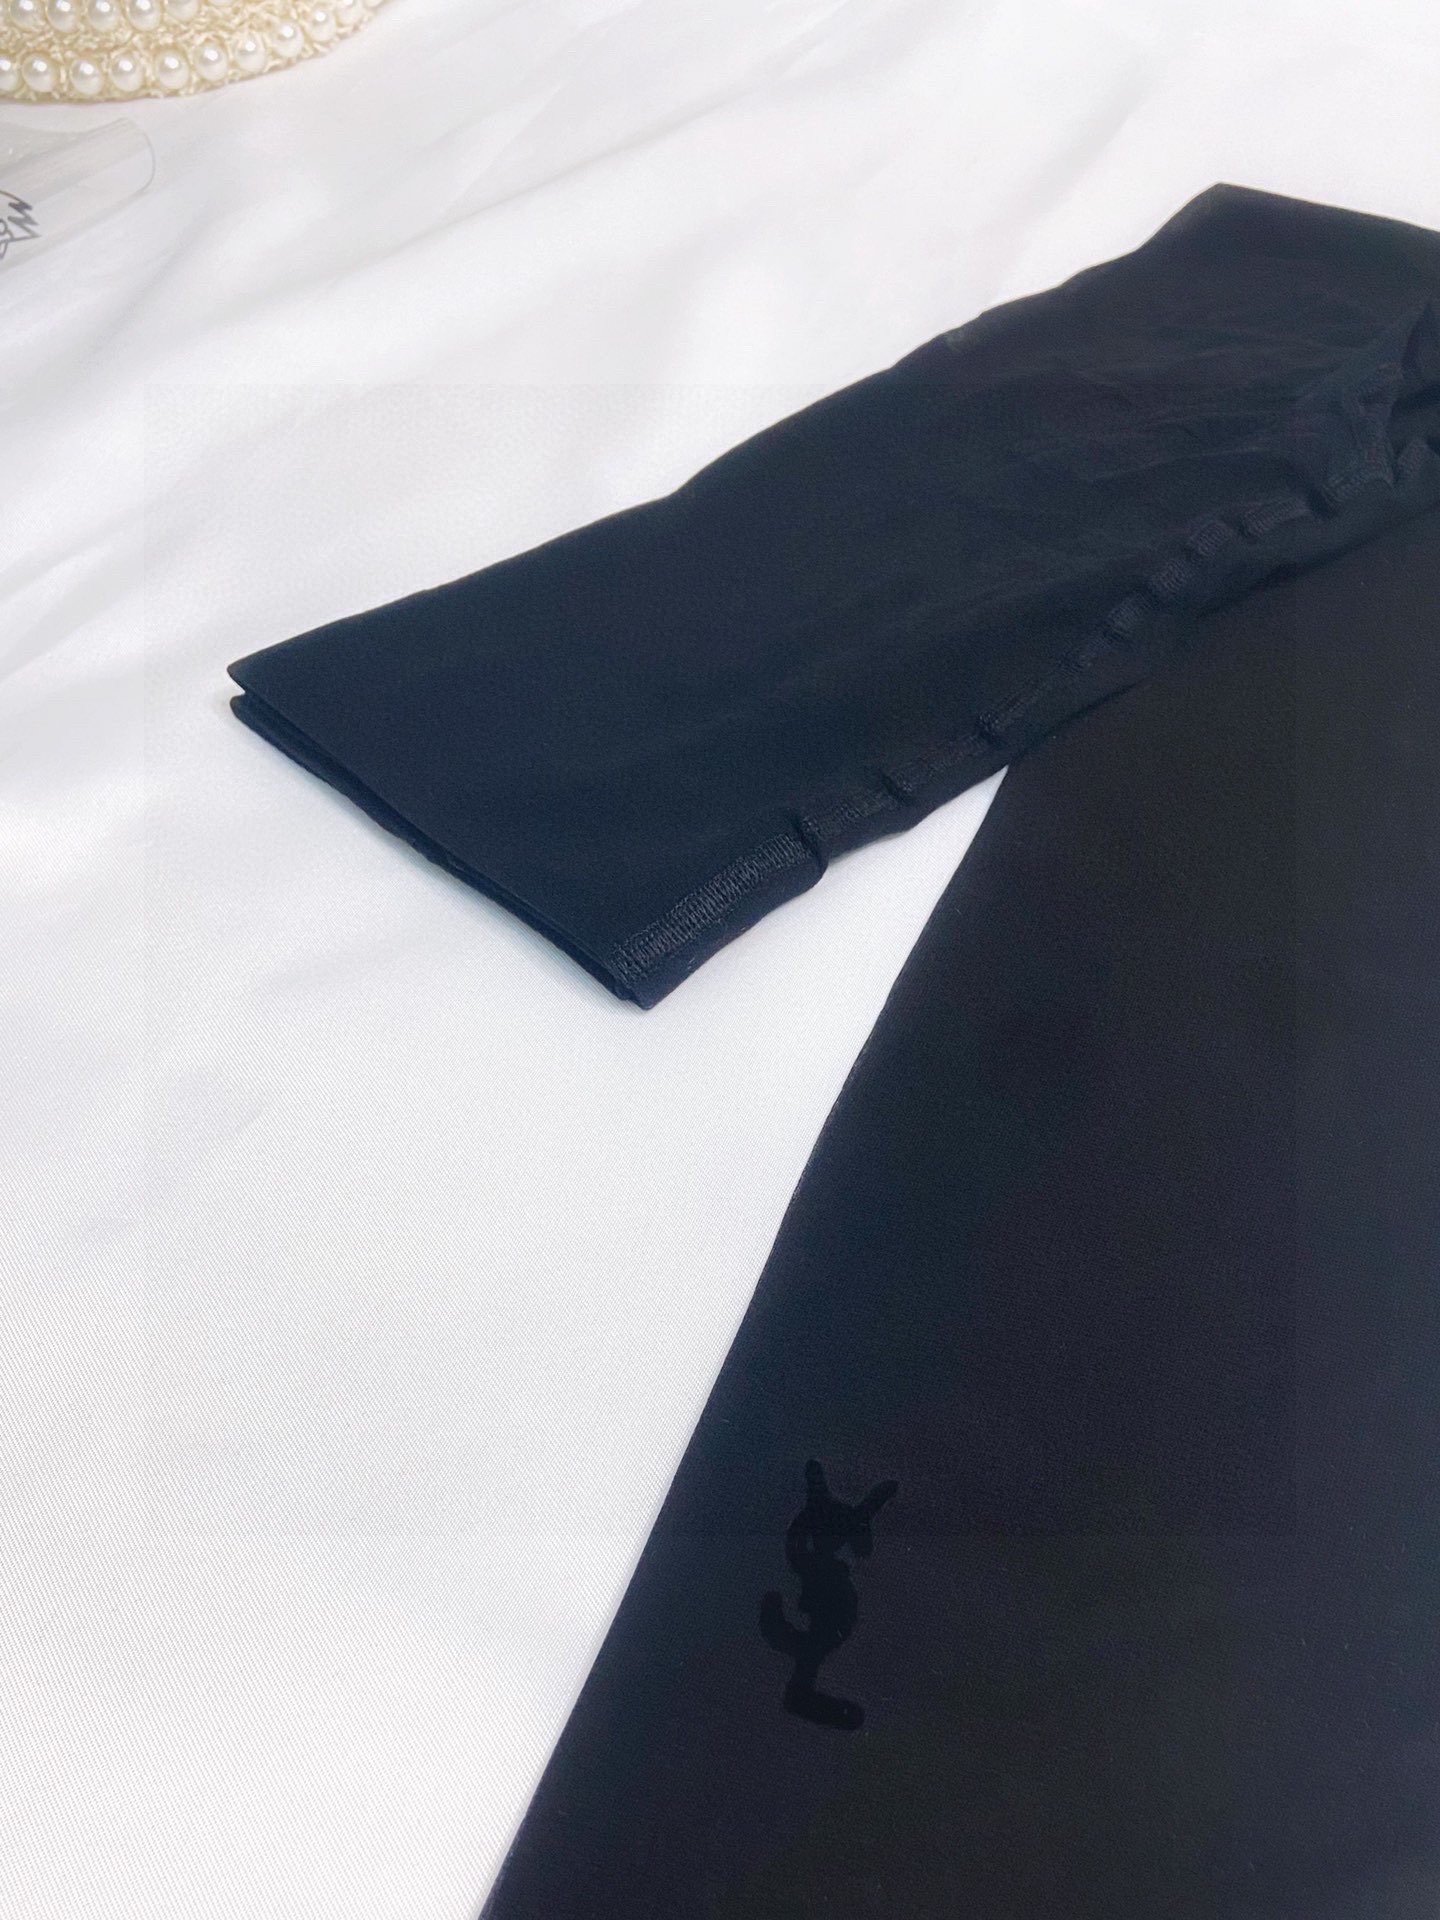 配包装一盒一双SaintLaurent#圣罗兰经典植绒YSL字母丝袜Rose同款超多明星带货！黑丝也能穿